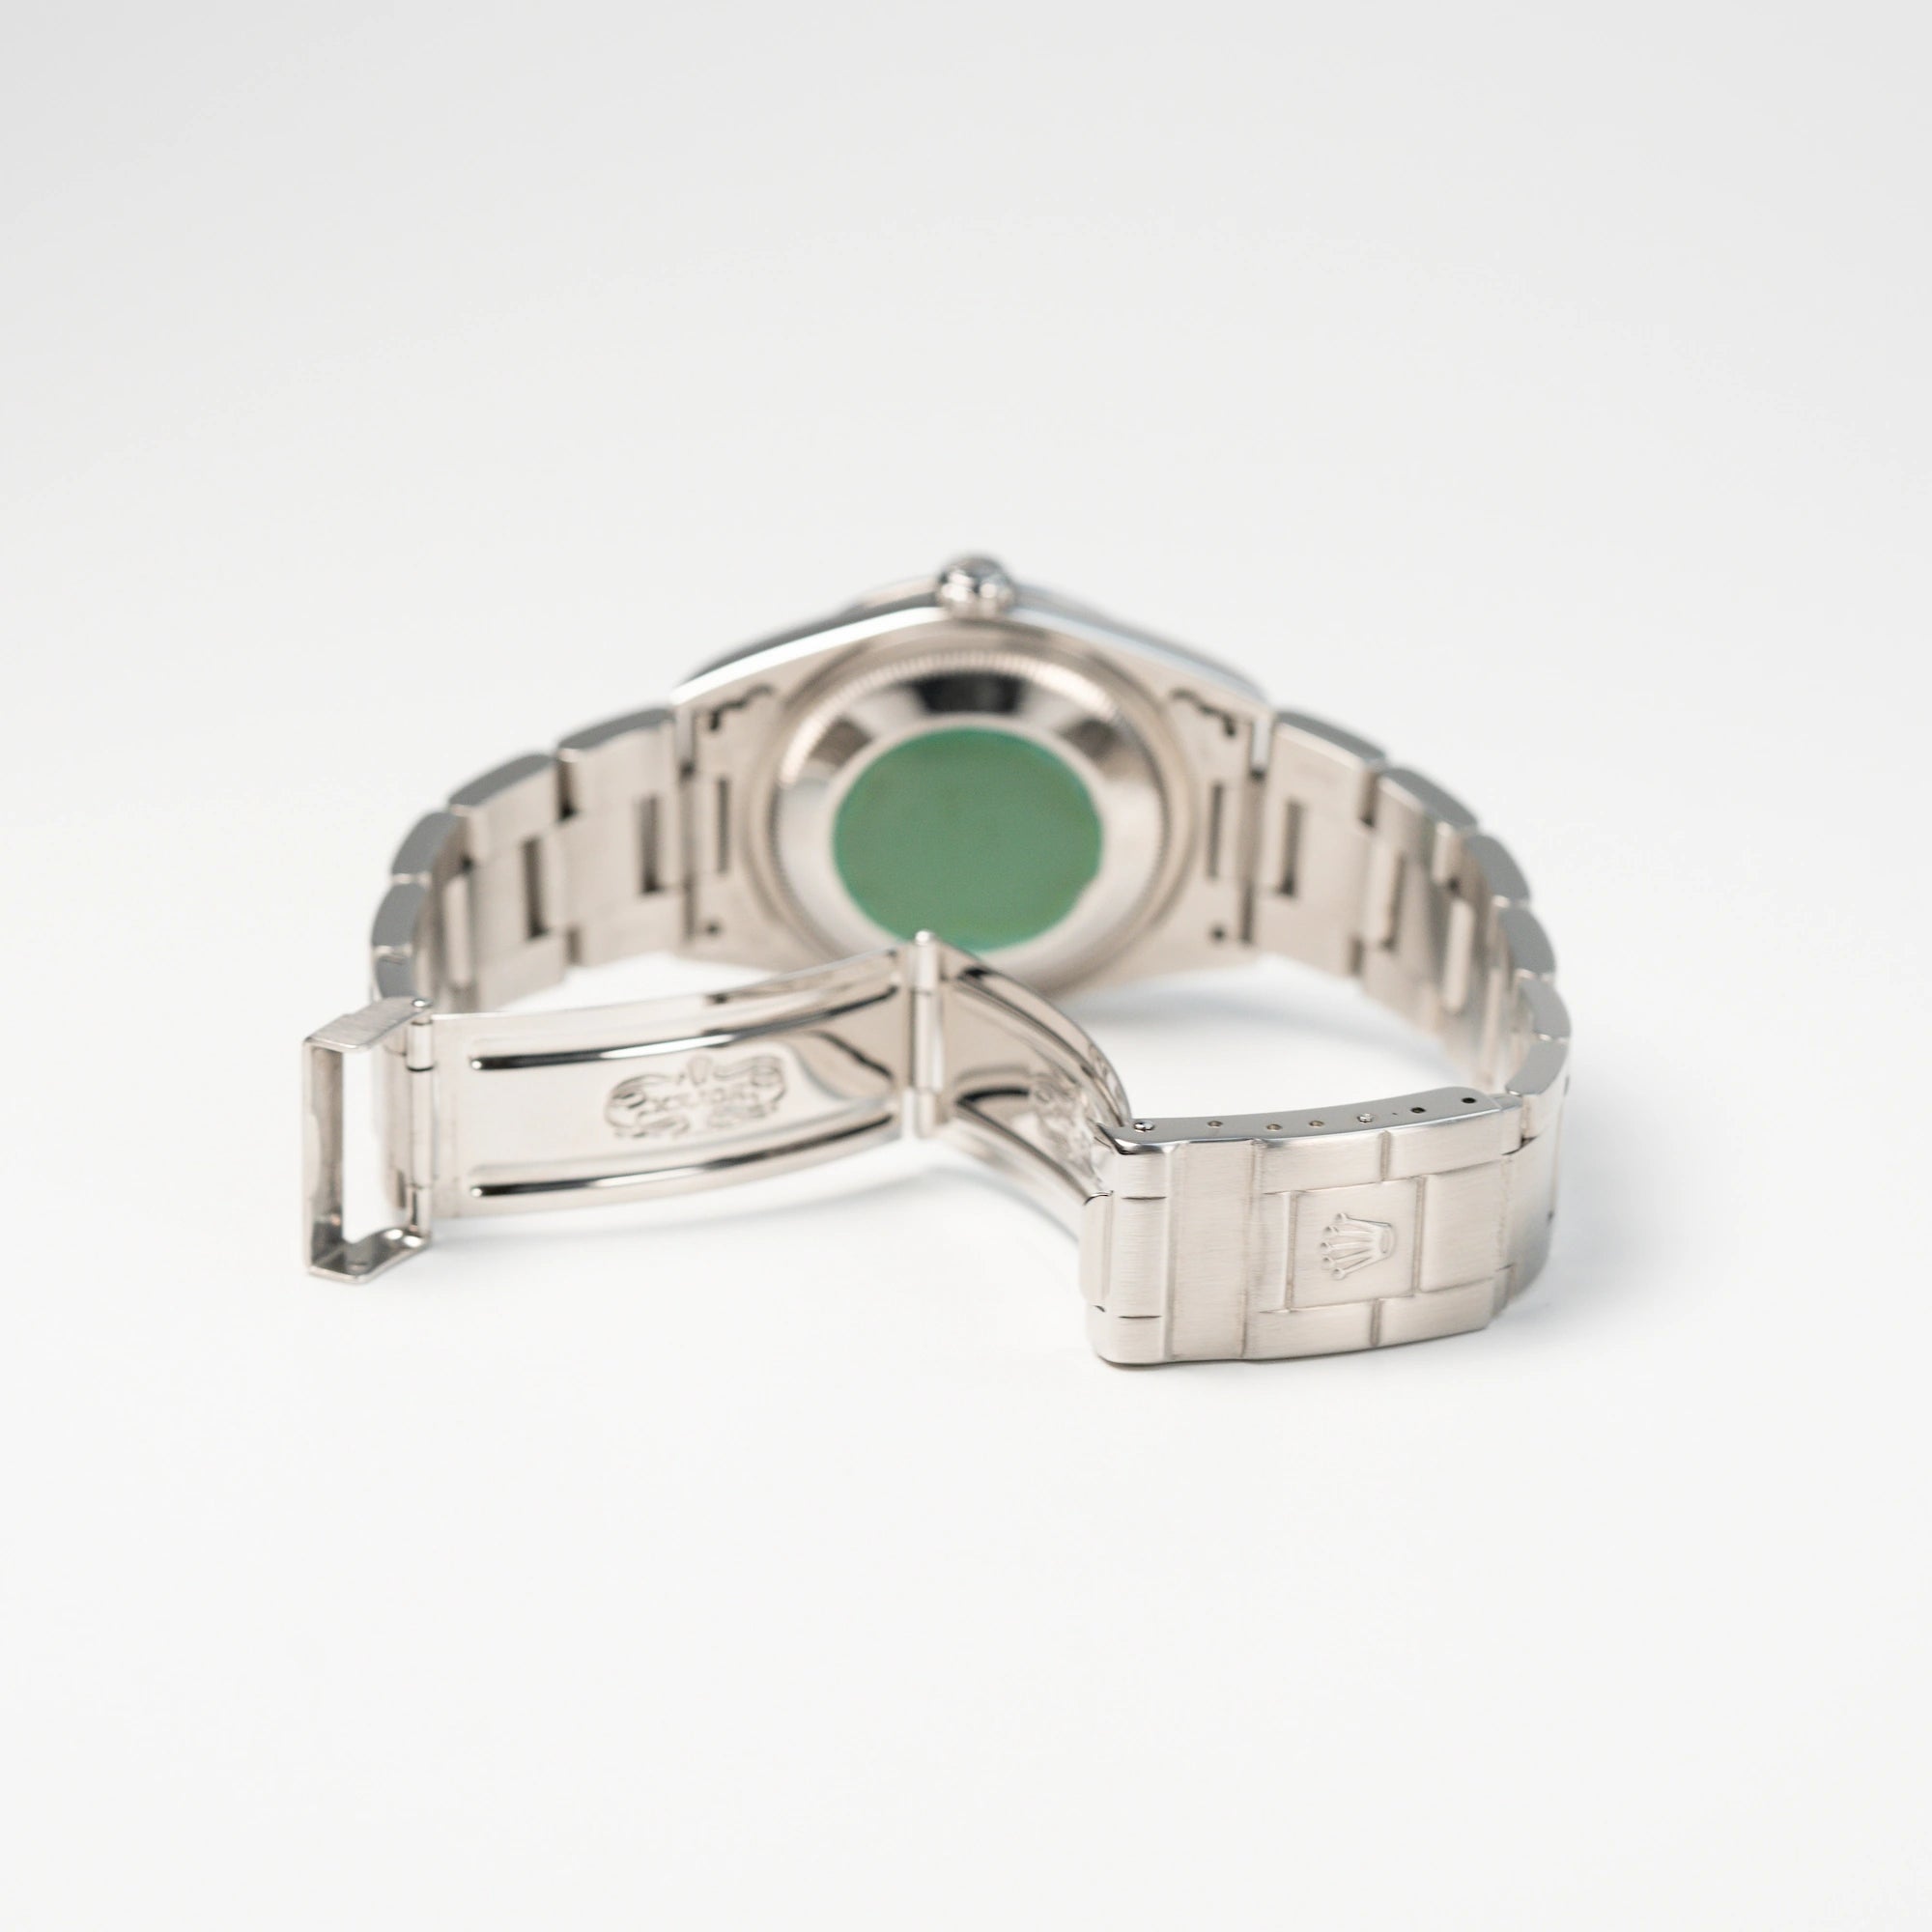 Gehäuseboden mit grünem Sticker und geöffnete Faltschließe der Rolex Explorer 1, Referenz 14270